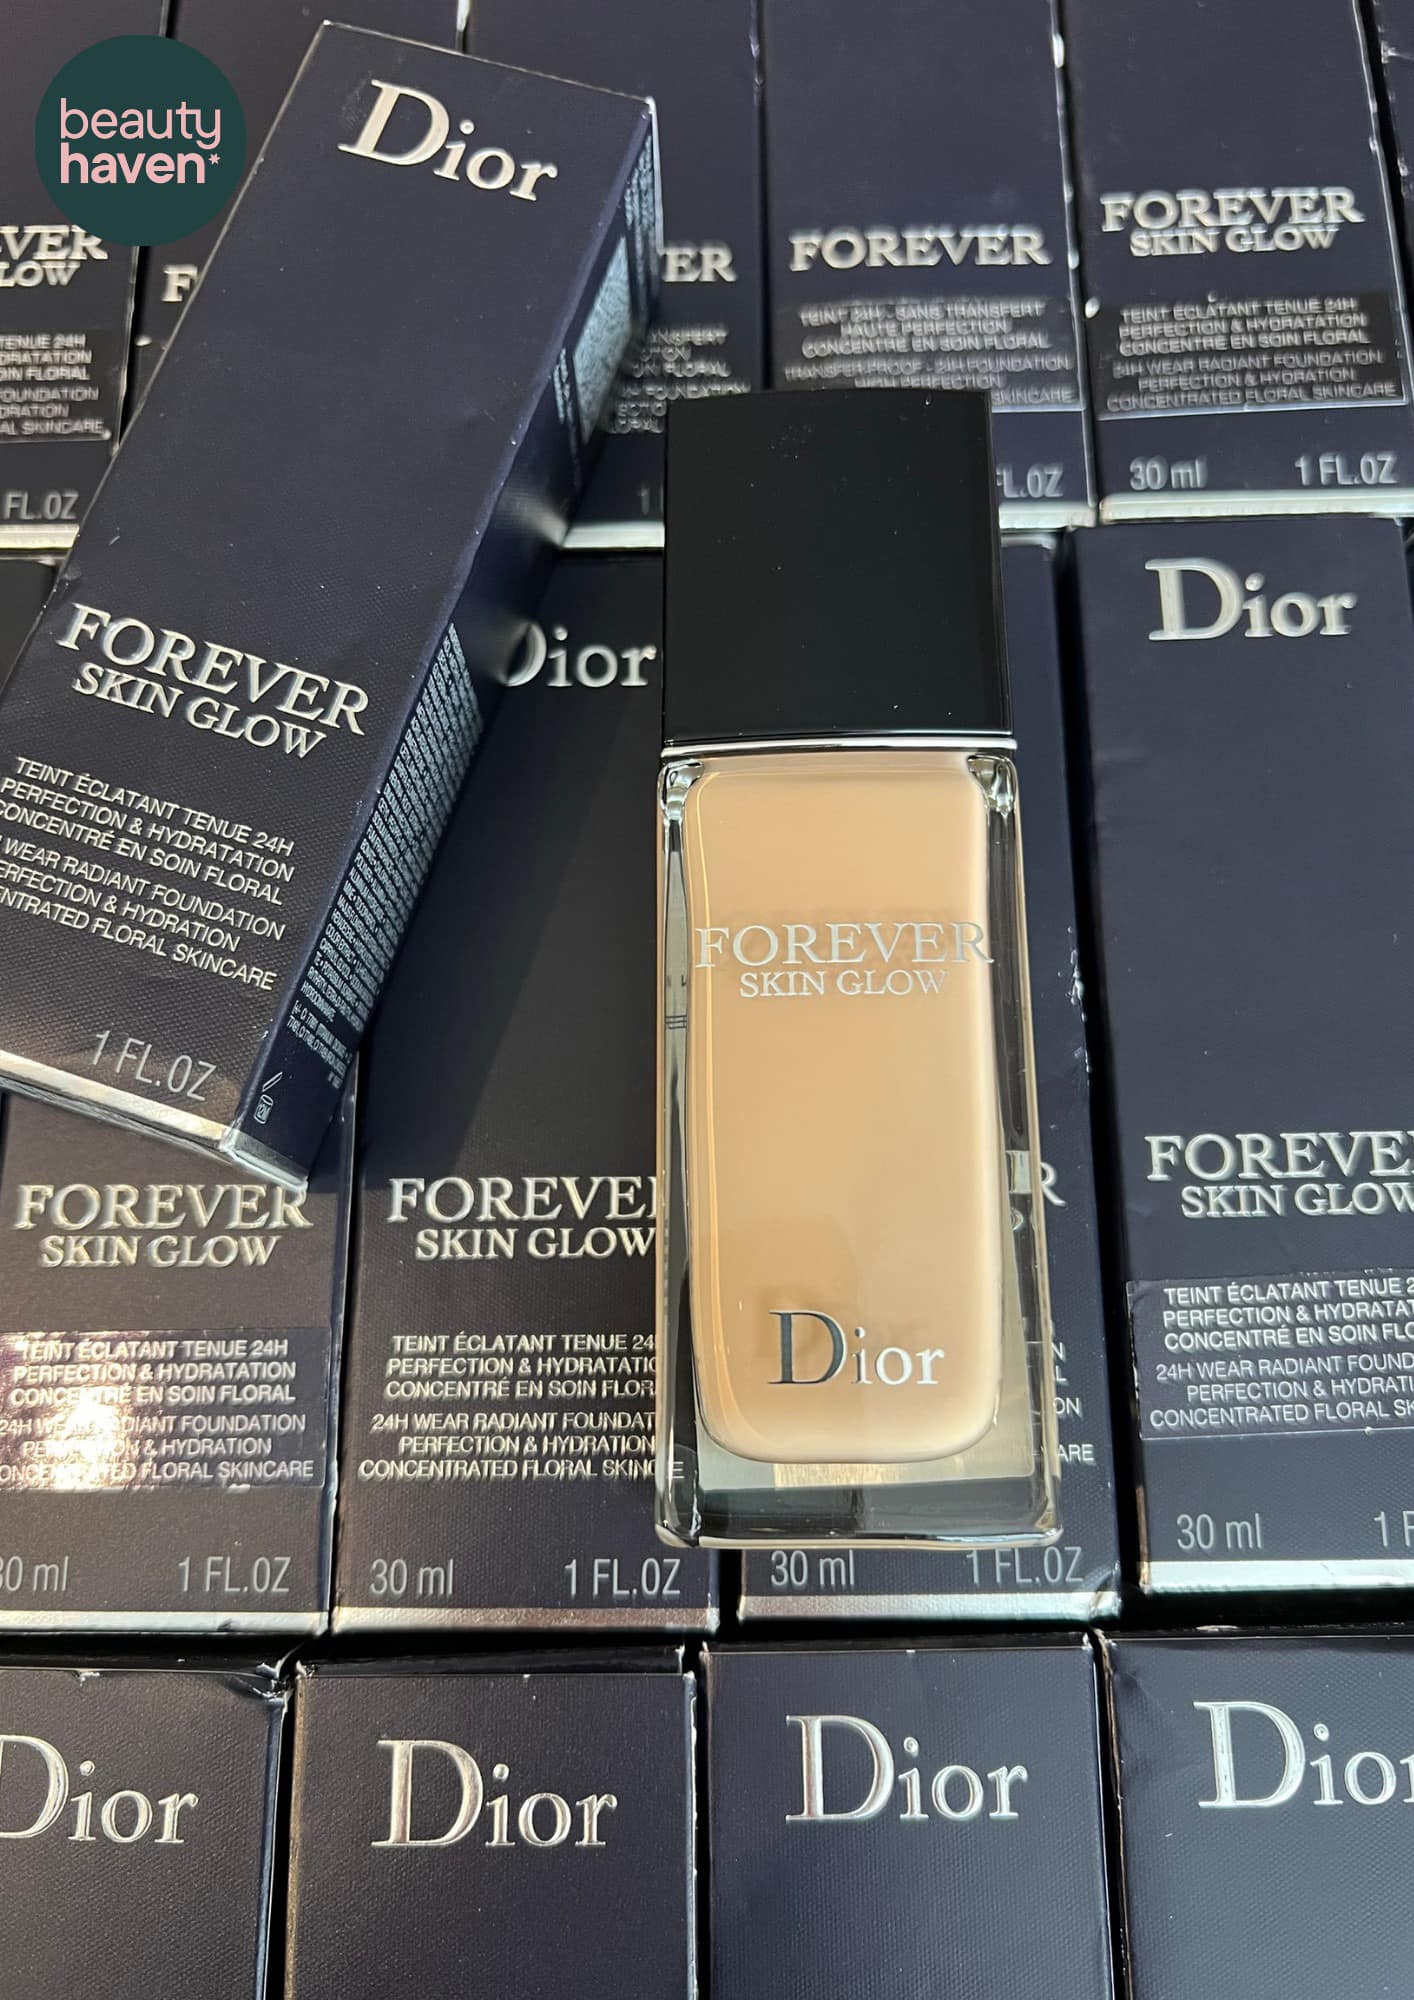 Sự kết hợp hoàn hảo giữa độ lì và sự rạng rỡ của làn da được thể hiện qua hình ảnh kem nền Dior Forever Matte & Skin Glow. Kem nền này giúp kiểm soát dầu nhờn trên da một cách hiệu quả, đồng thời mang lại vẻ đẹp rực rỡ cho làn da của bạn.